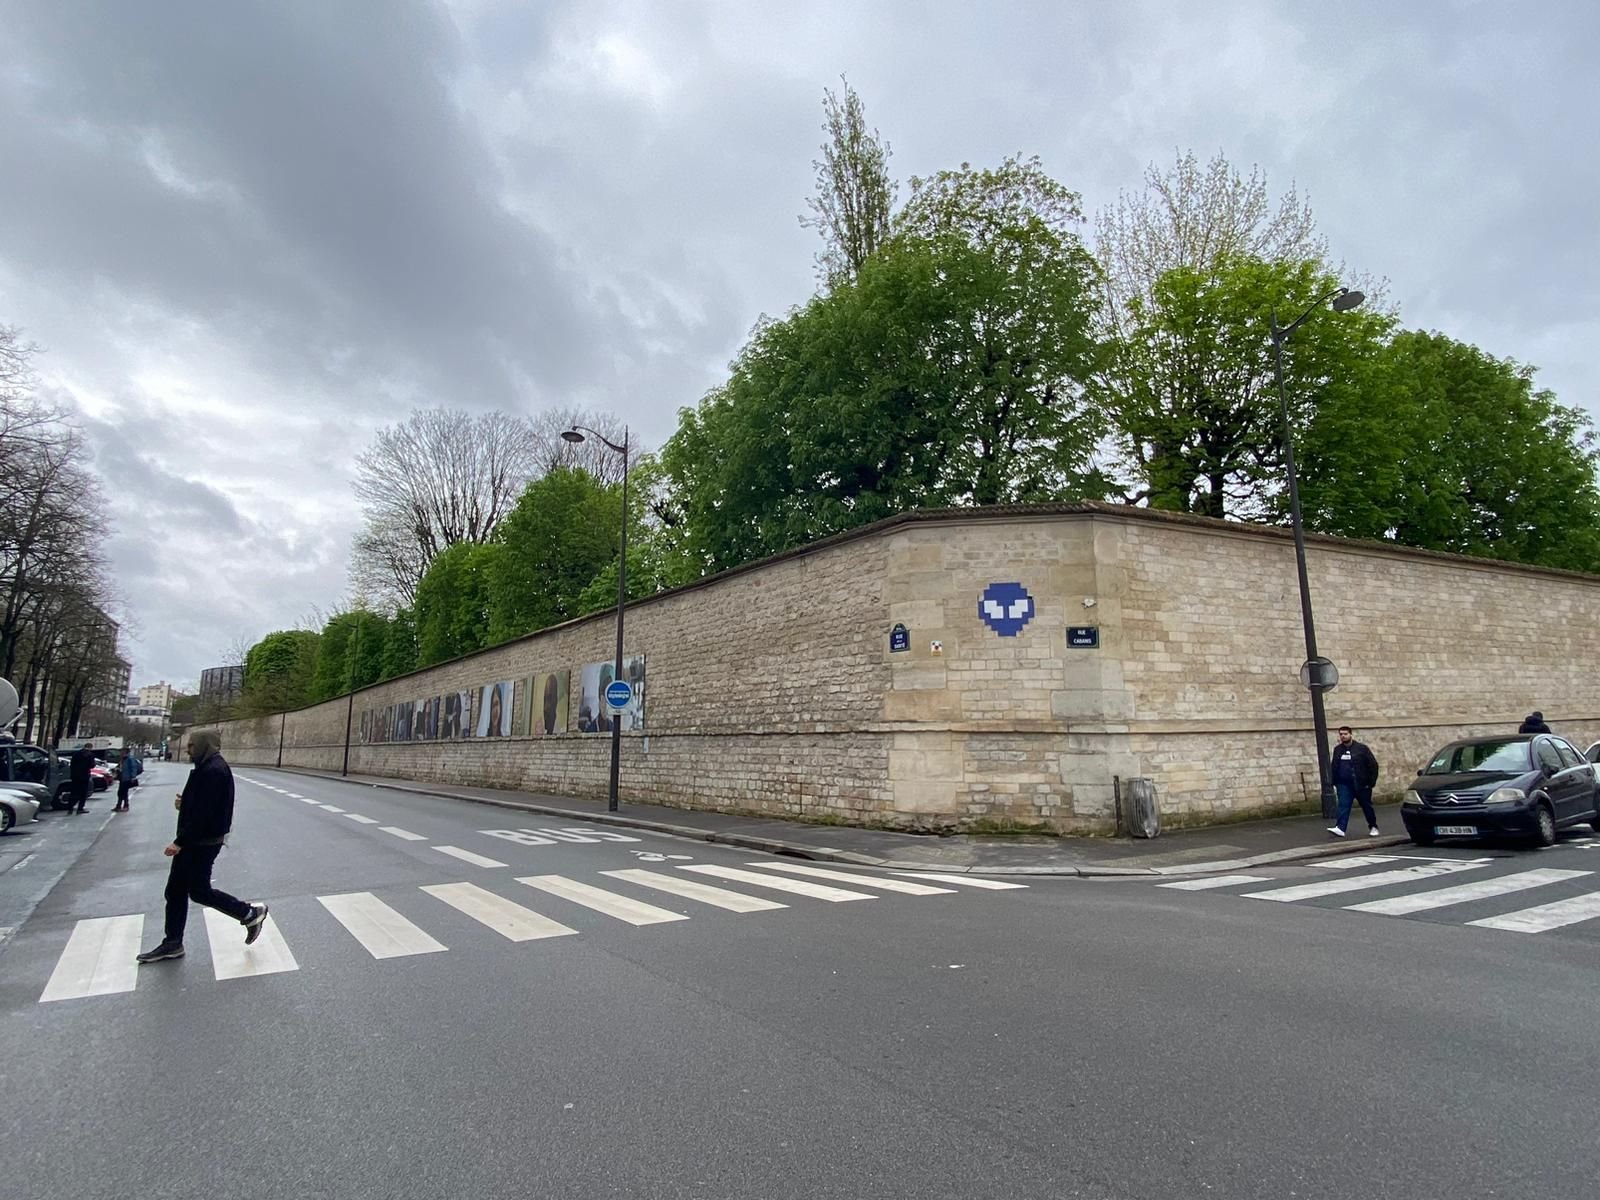 Paris XIVe, ce mercredi matin. C'est au niveau du 93, rue de la Santé proche de l'hôpital Sainte-Anne (derrière ce mur) qu'un technicien a découvert ce qui ressemble à un tunnel.